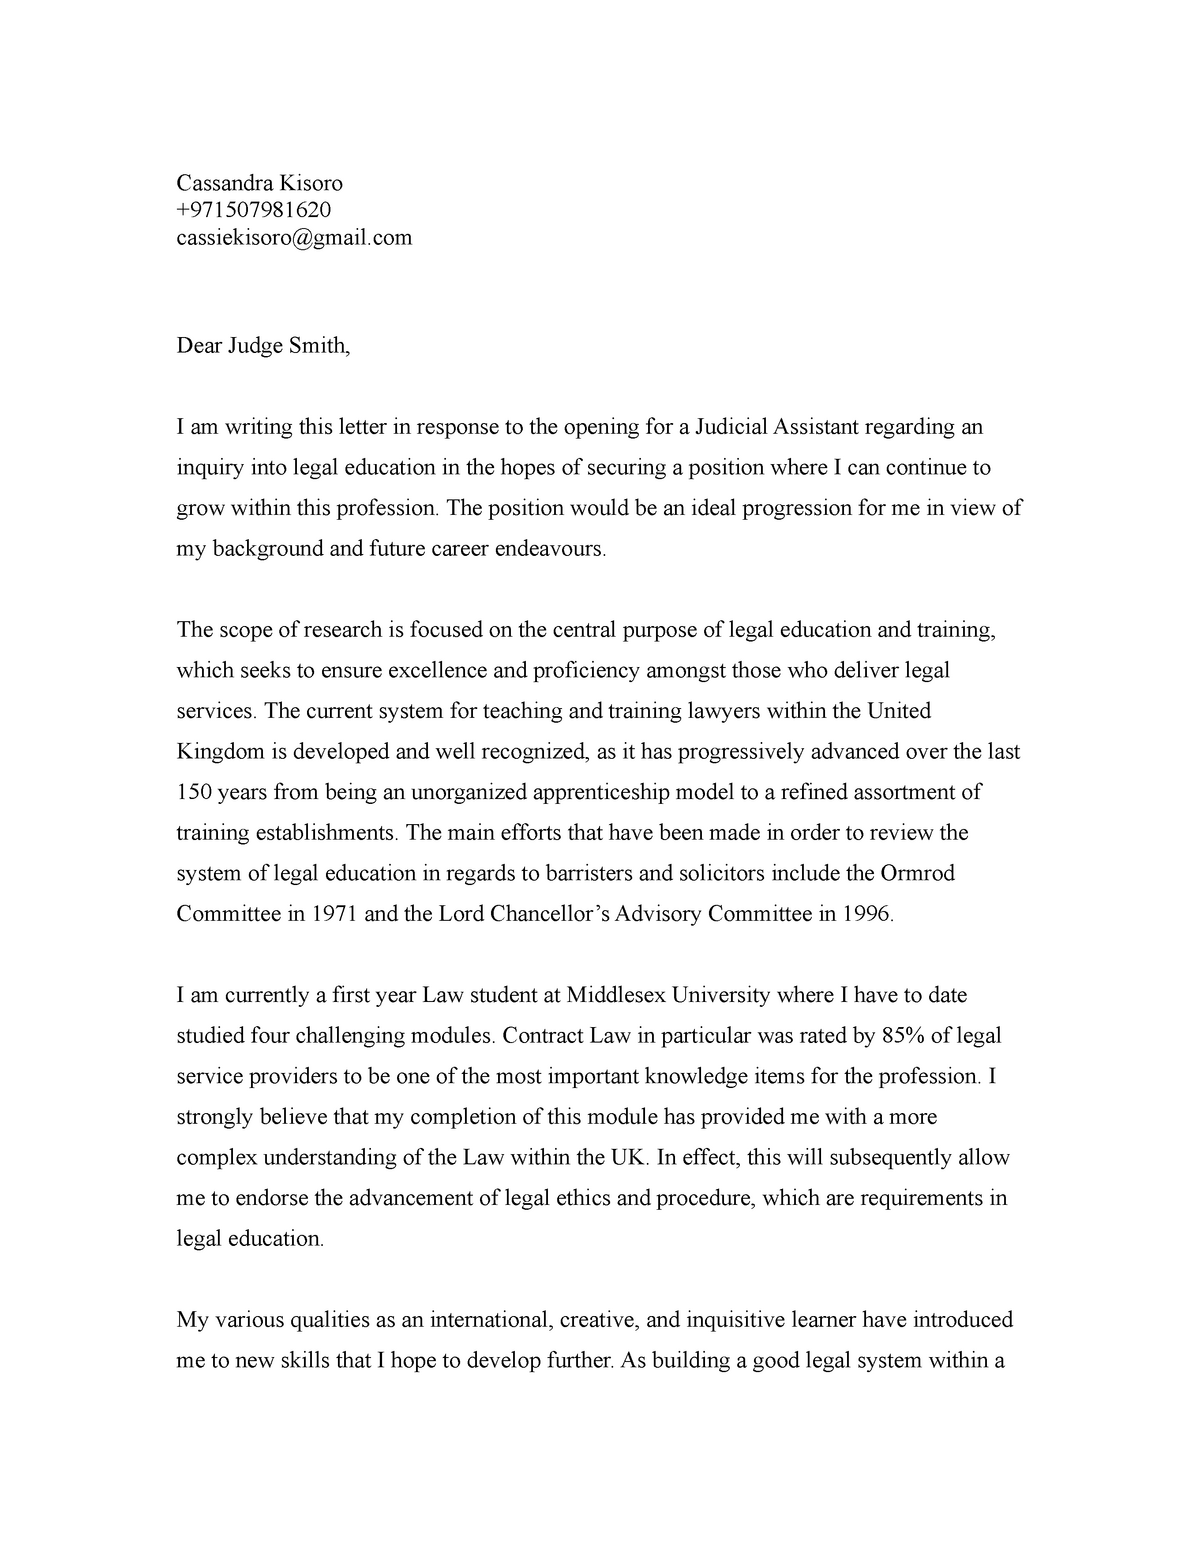 Judicial Assistant Cover Letter - Cassandra Kisoro + cassiekisoro@gmail ...